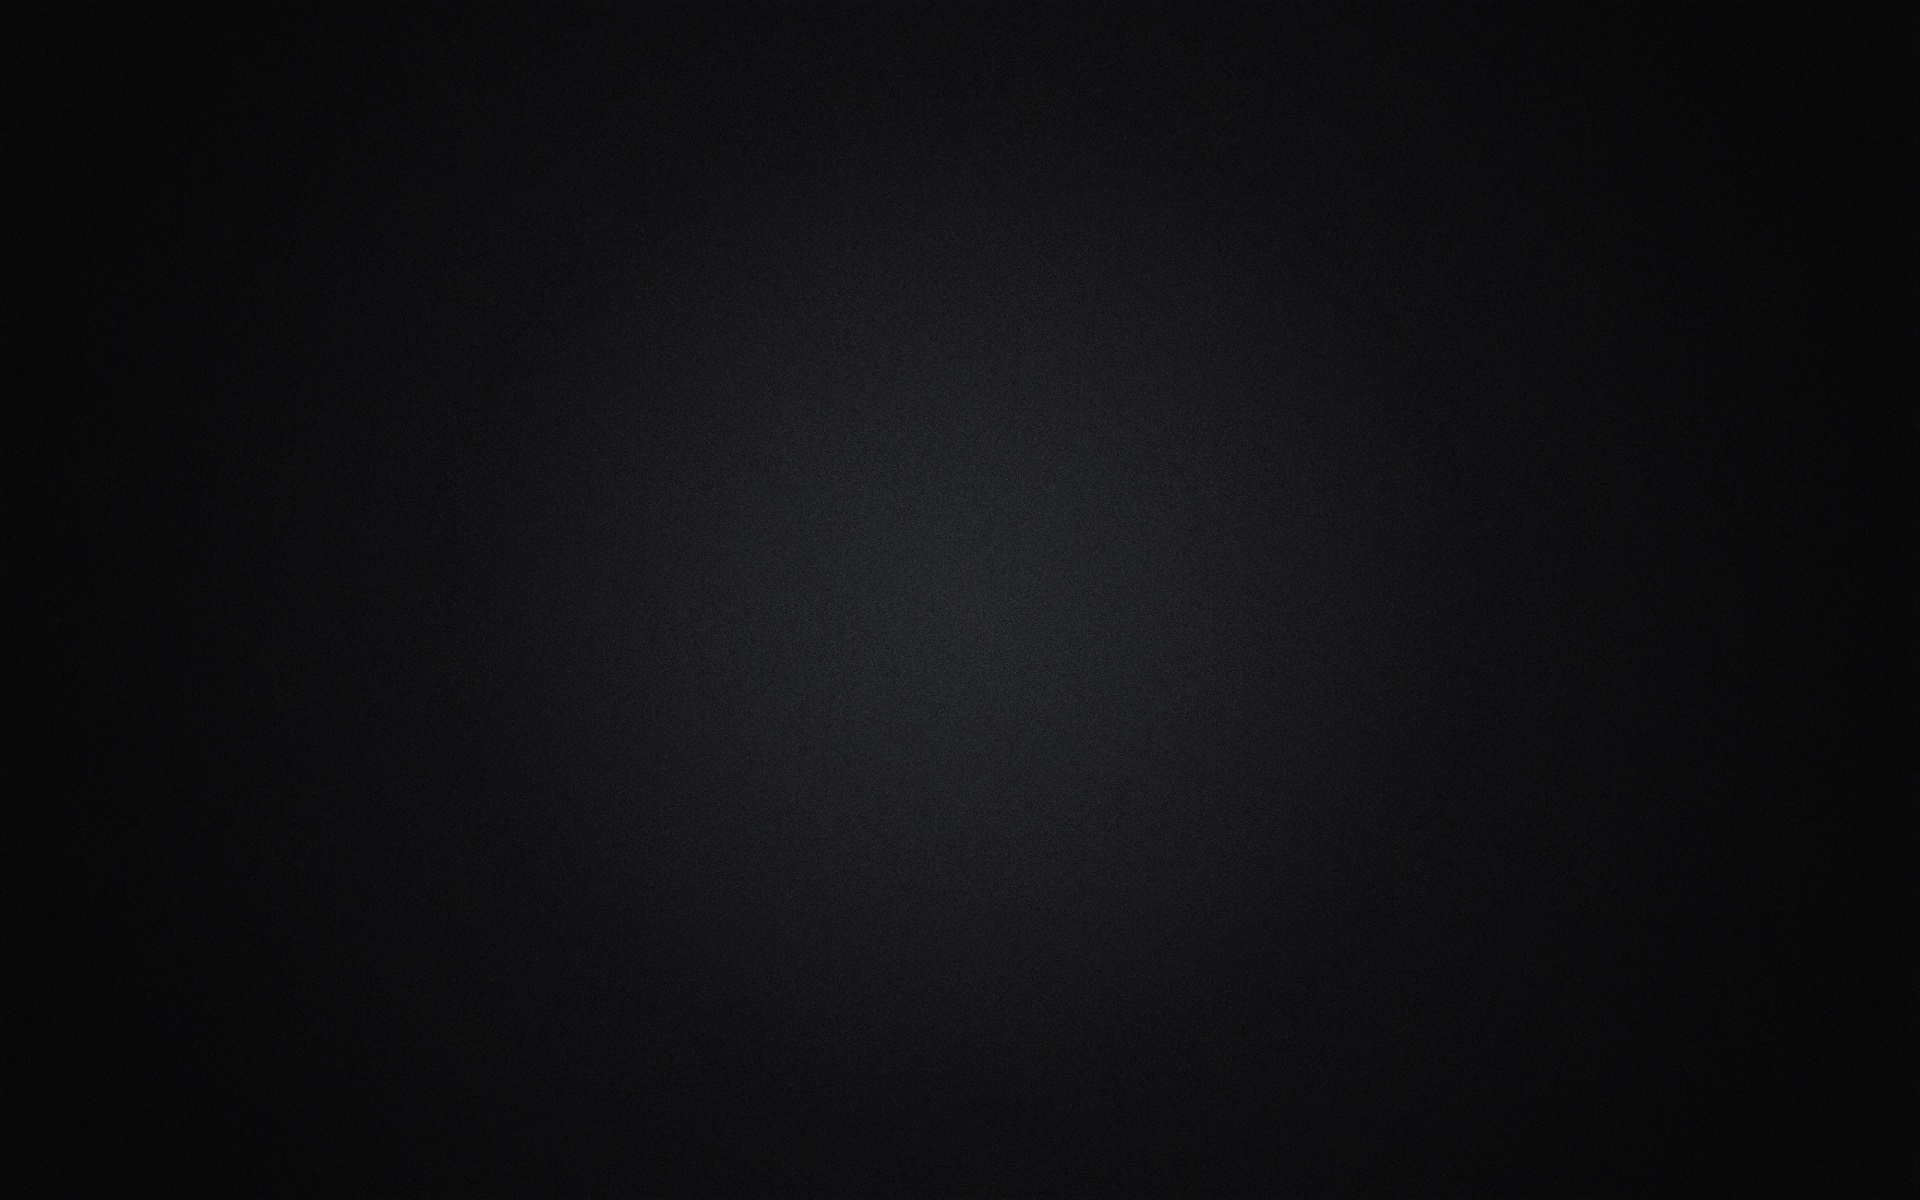 Cool Black Wallpapers Full Screen - WallpaperSafari